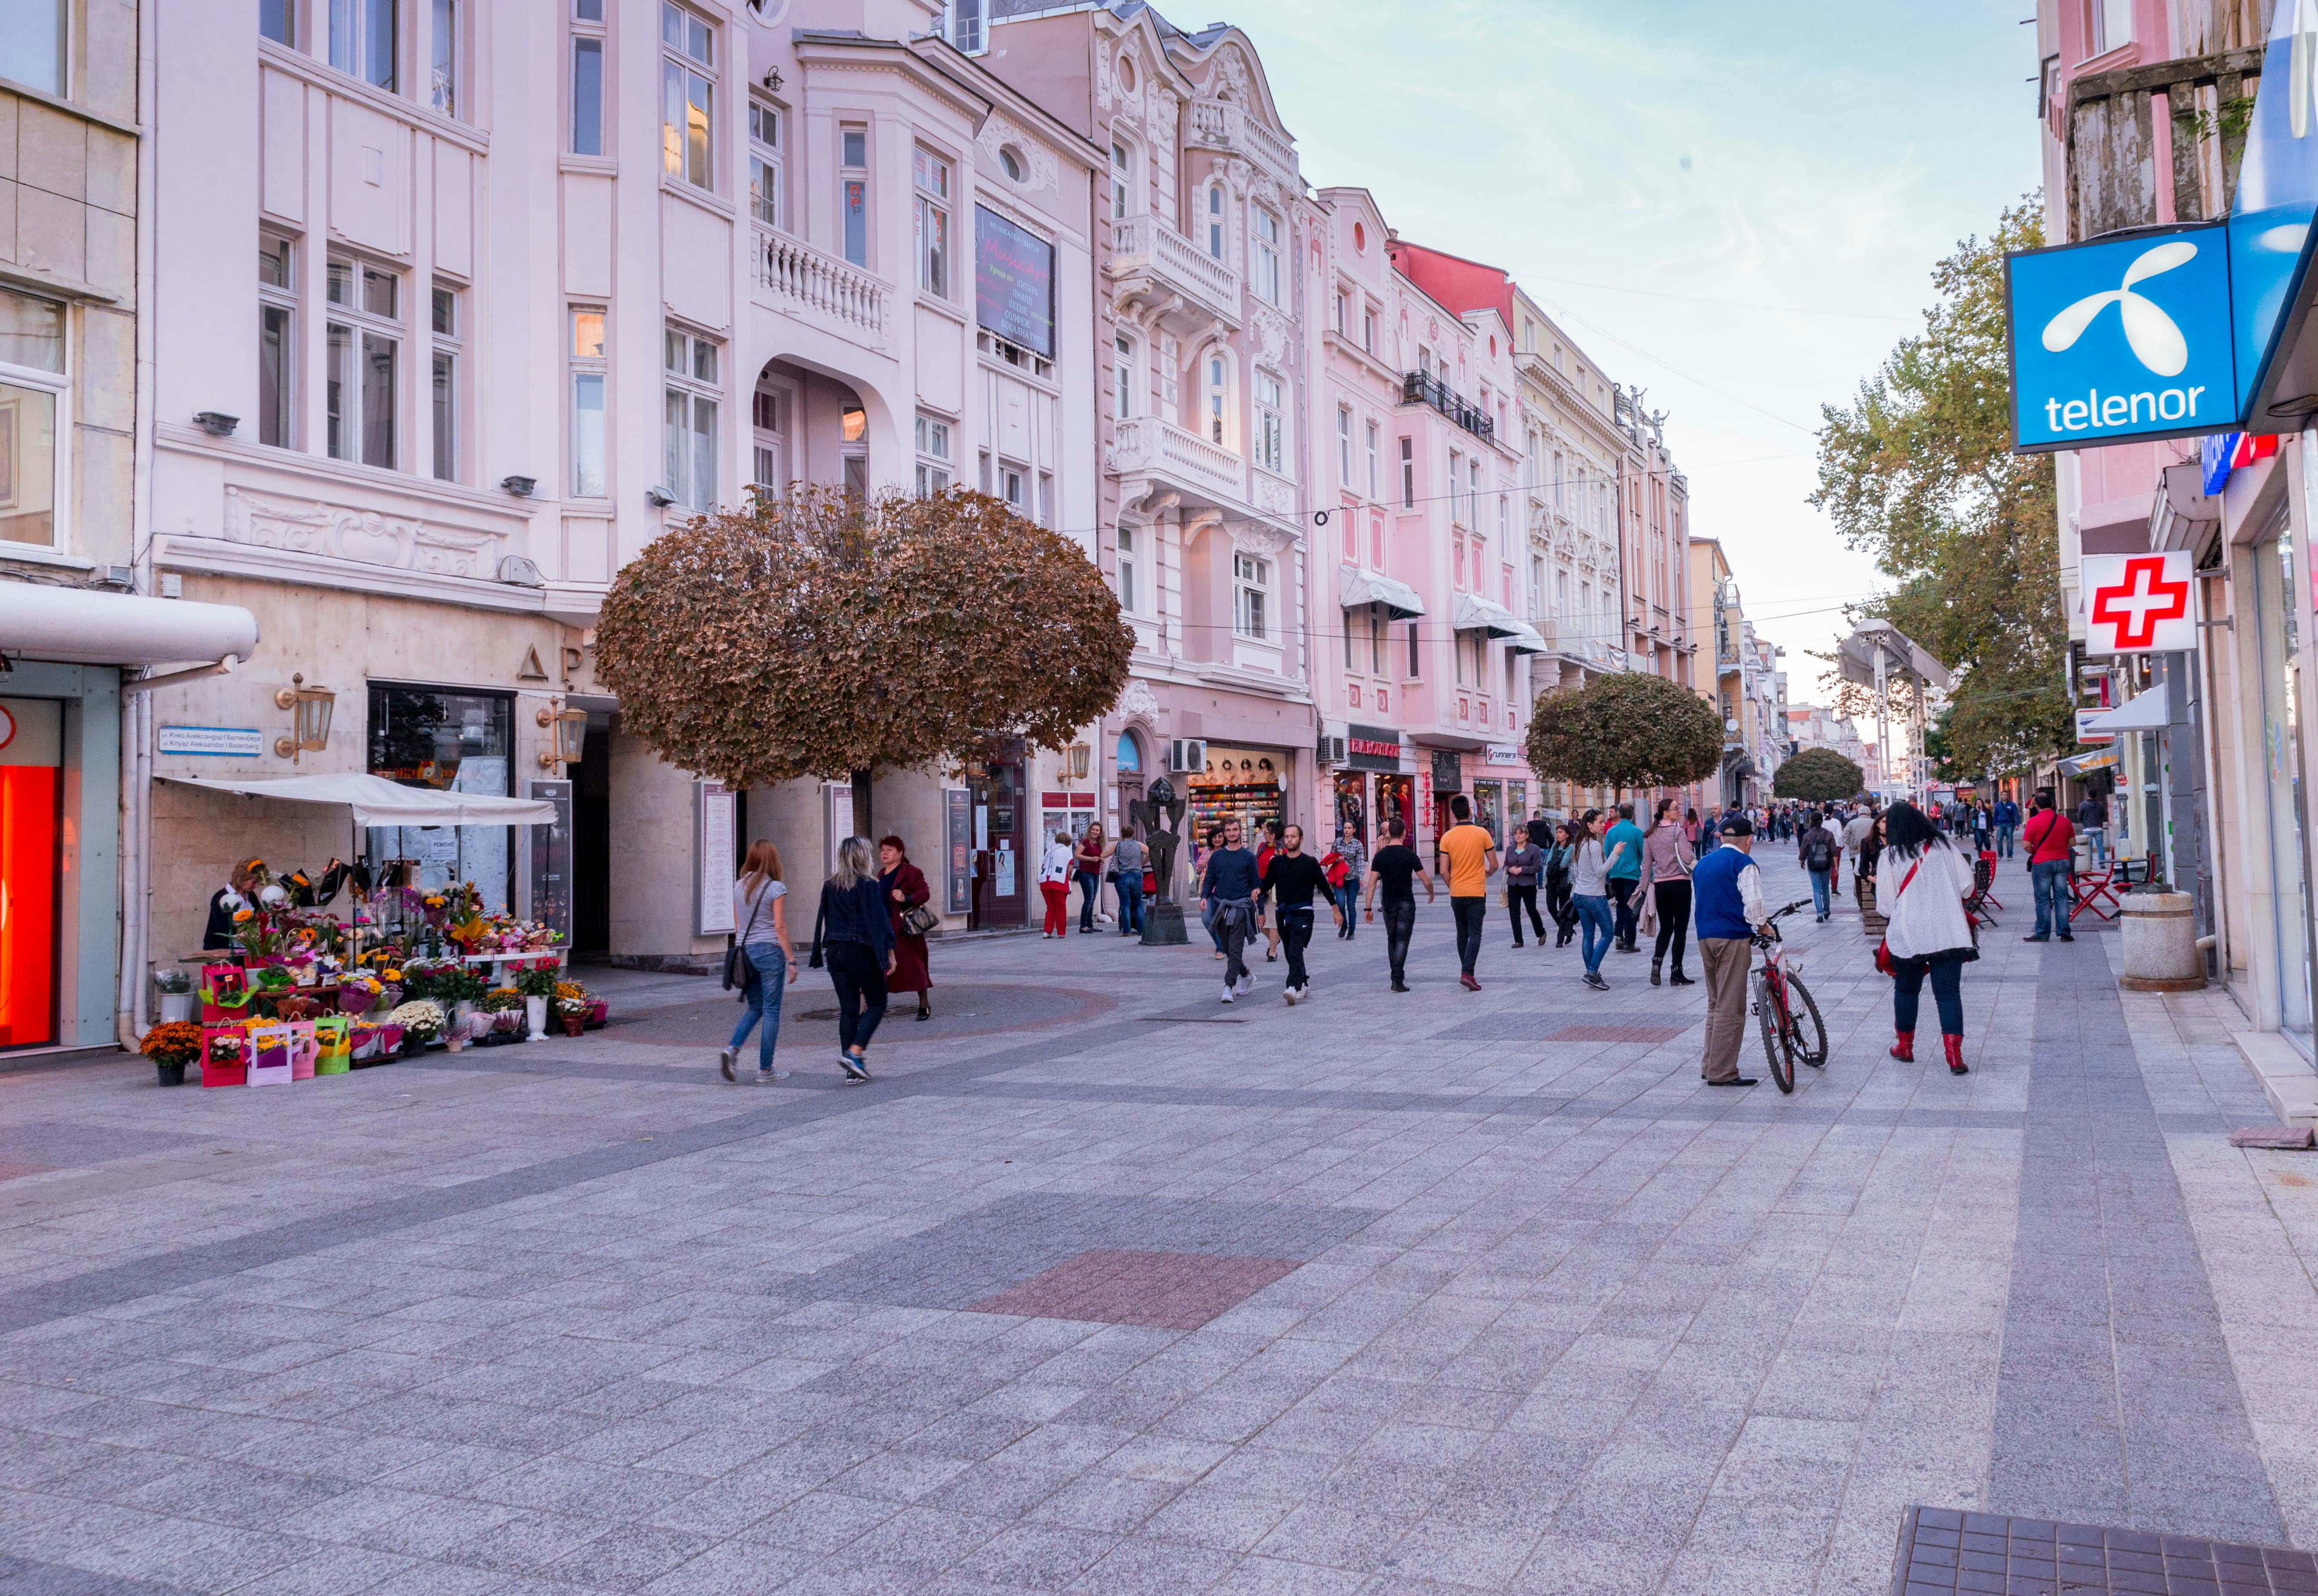 Kulturreise durch die Altstadt von Plovdiv